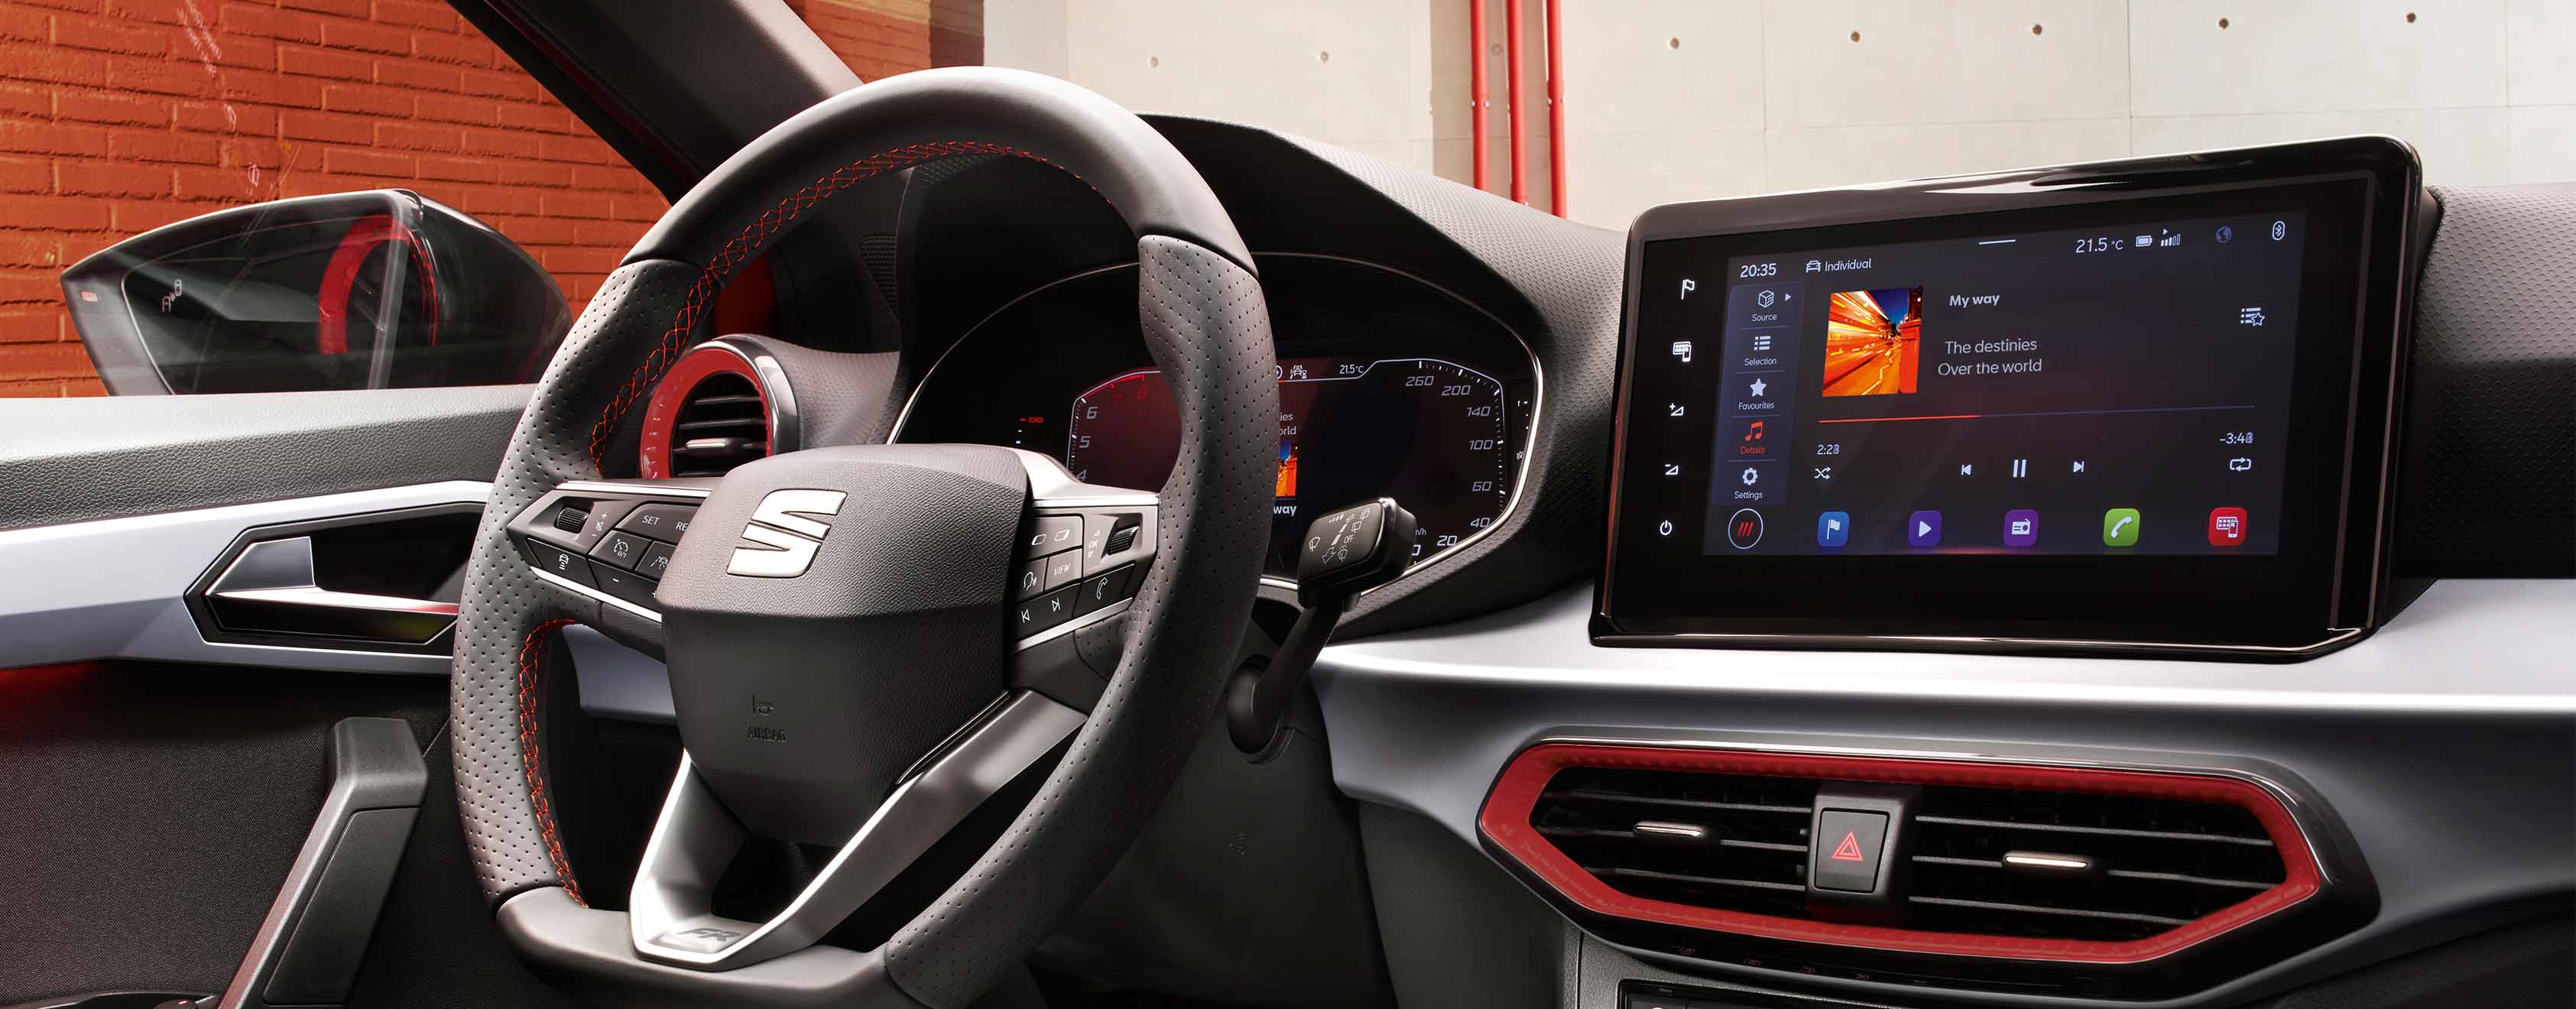 SEAT Ibiza Innenansicht mit Steuerrad und schwebendem Touchscreen 